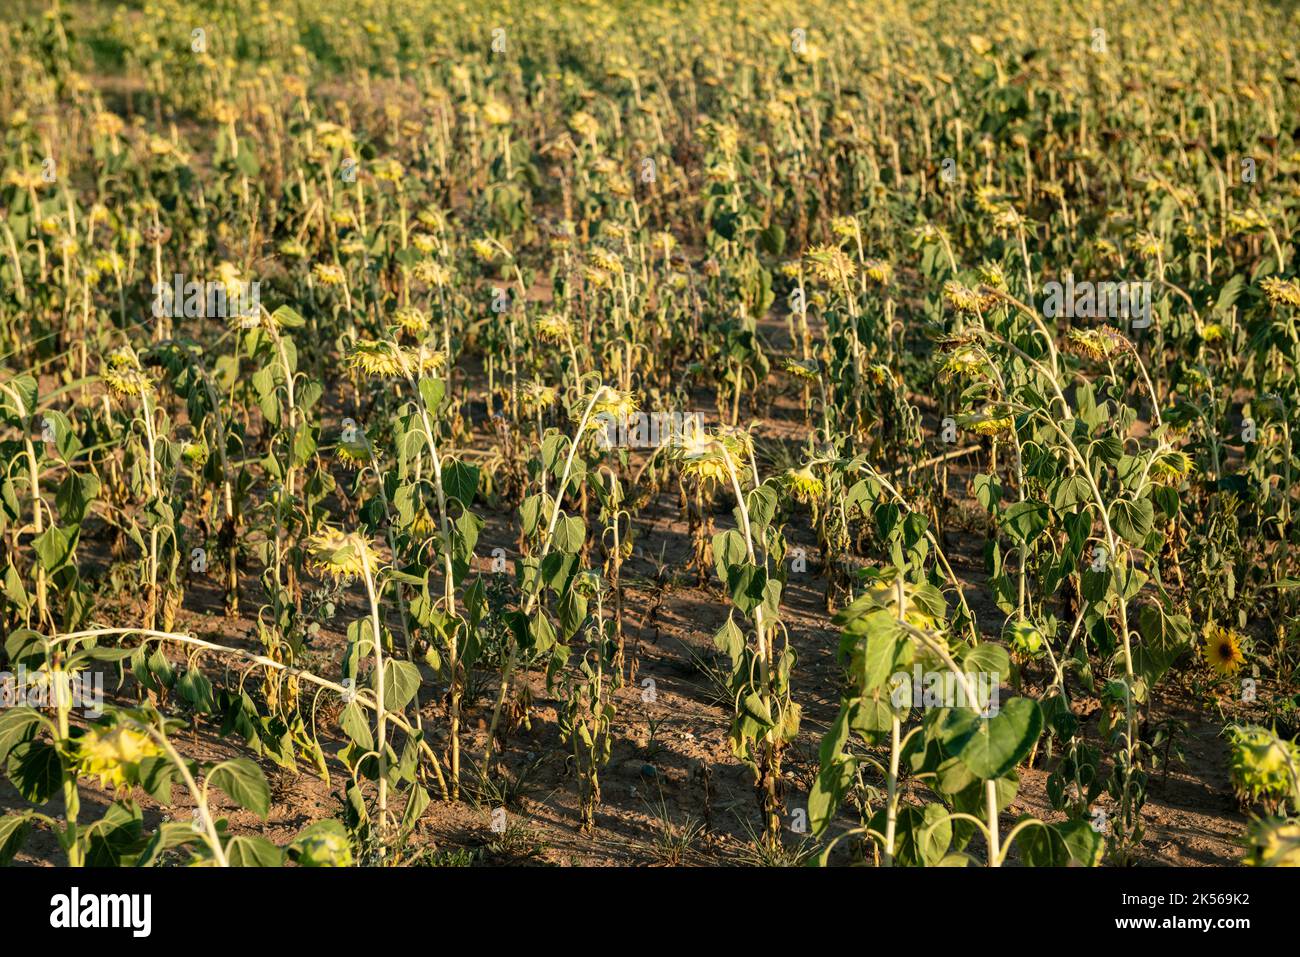 Les champs de tournesol arides et secs, en raison de la crise climatique et de la sécheresse, ont créé des problèmes dans le monde agricole, créant des cris de production. Banque D'Images